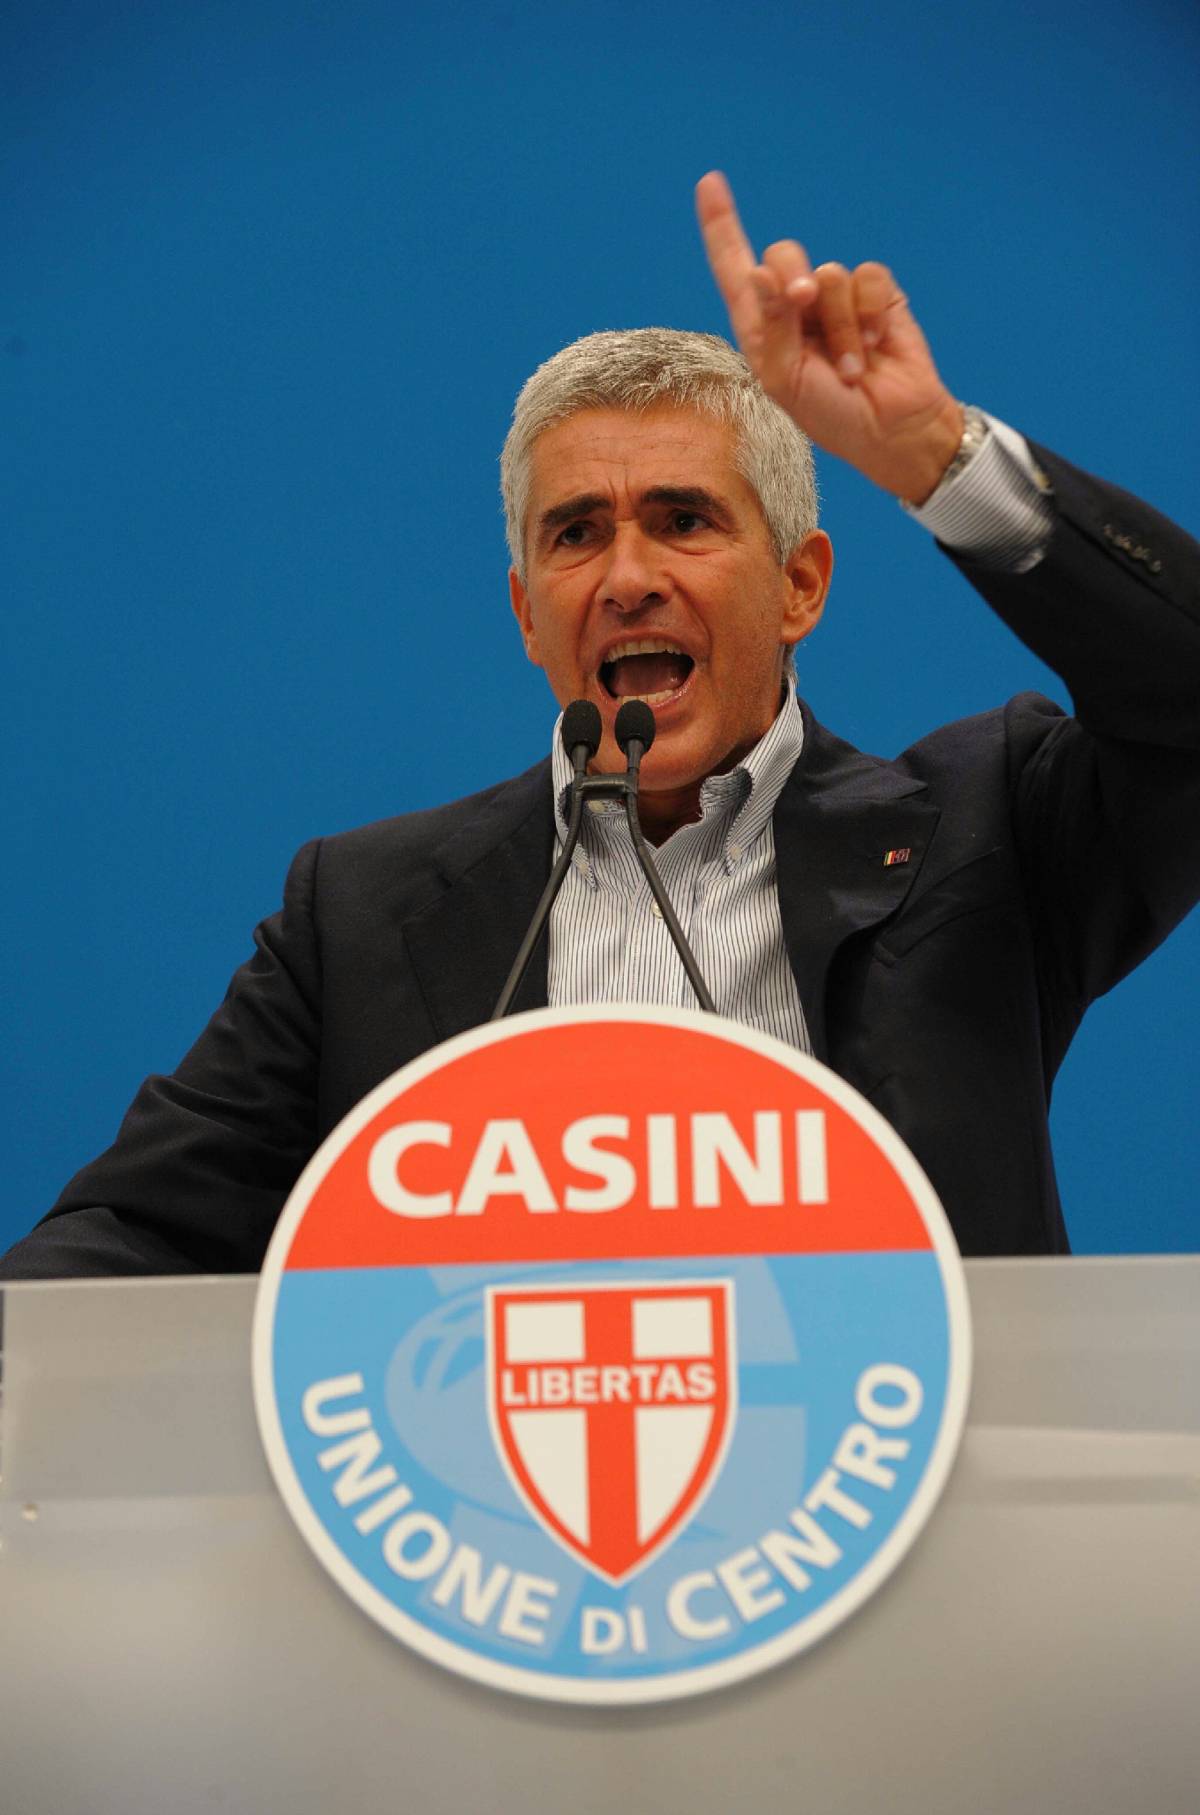 La sfida-bluff di Casini: "Facciamo fuori la Lega"